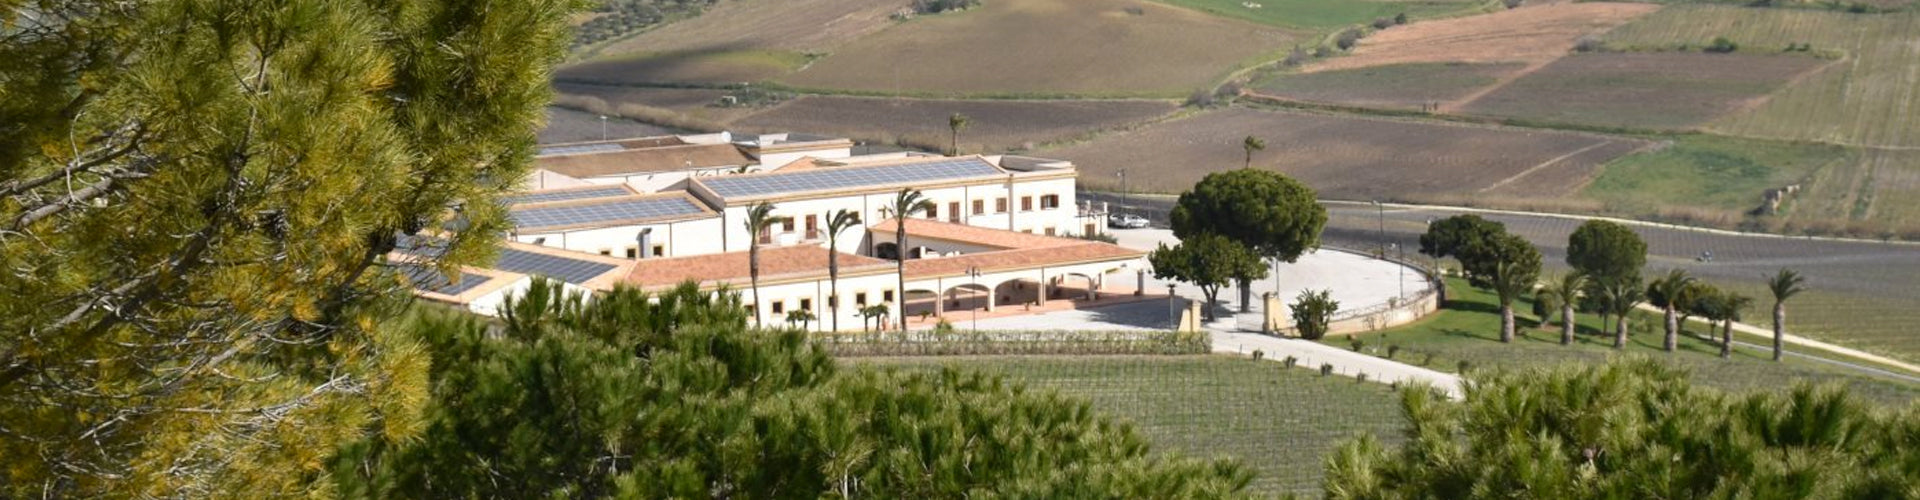 Feudo Arancio Estate in Sicily